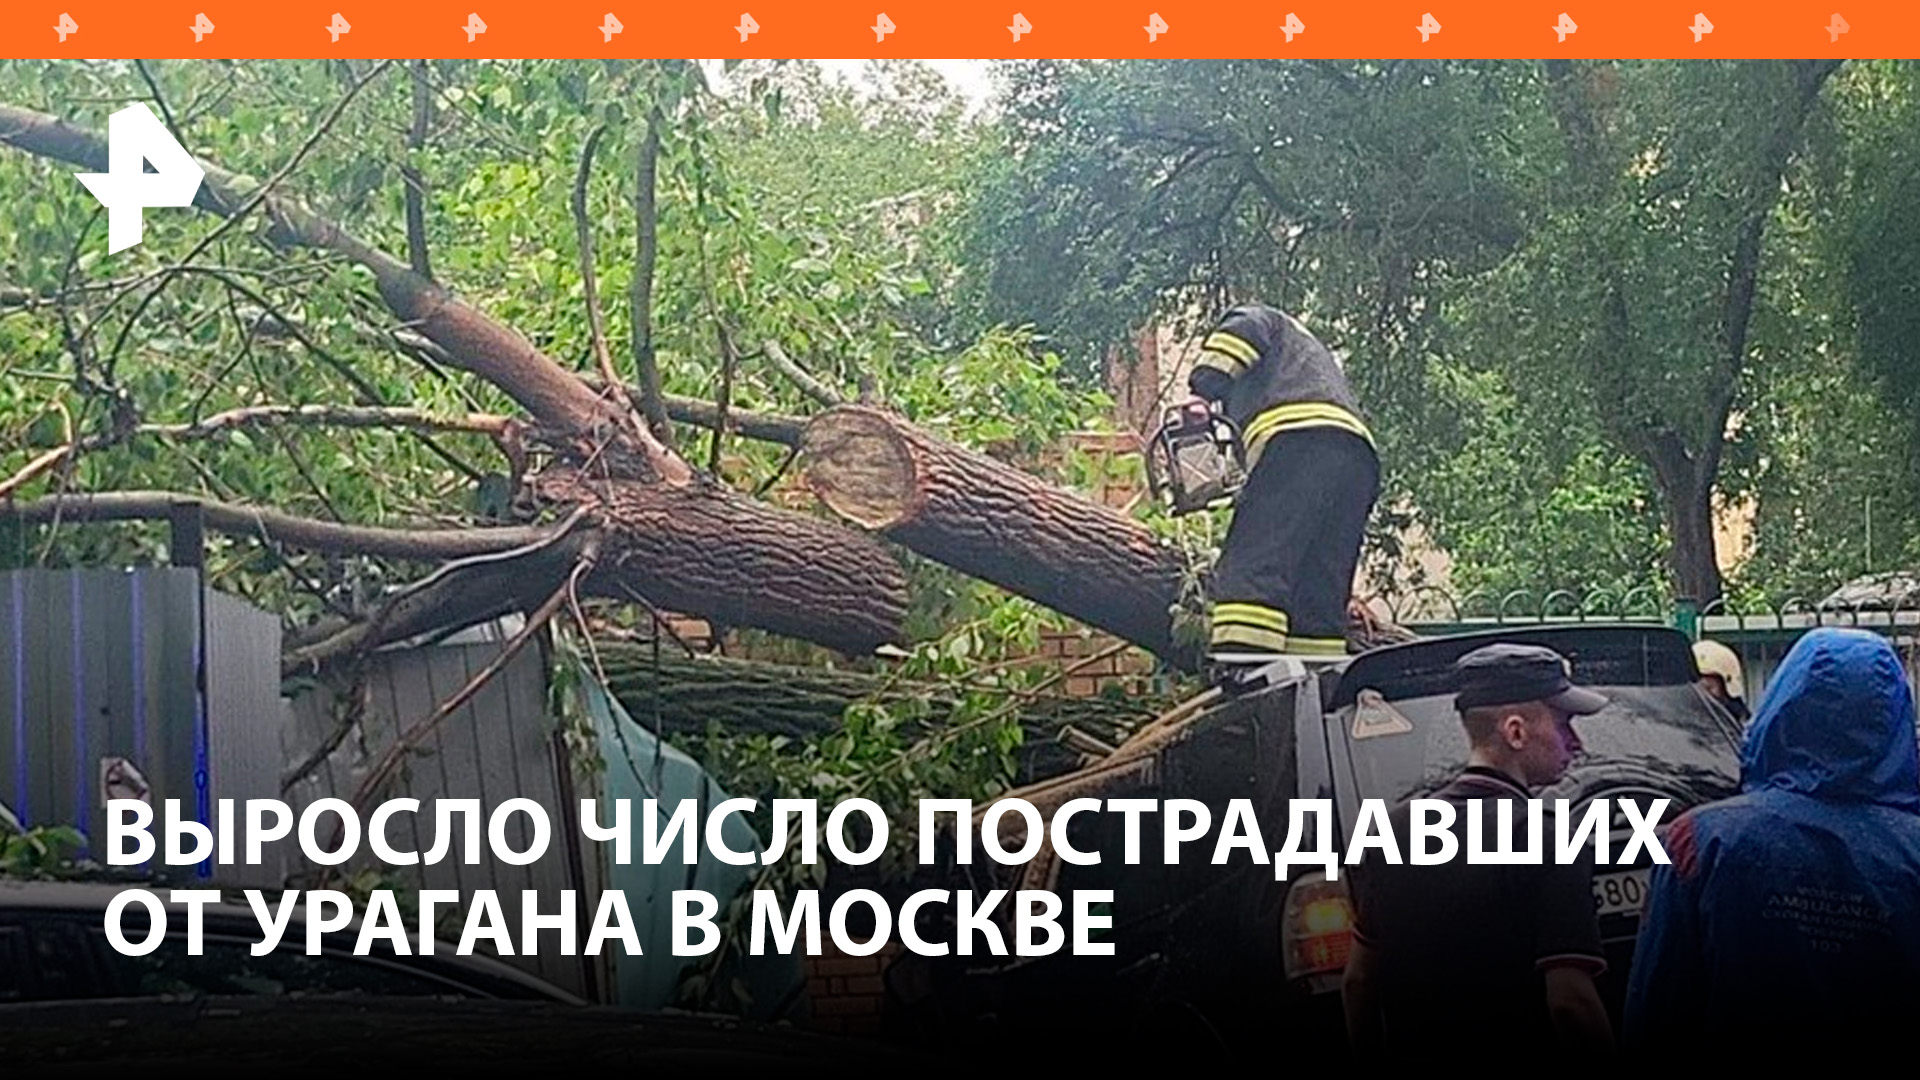 До 35 человек выросло число пострадавших во время урагана "Эдгар" / РЕН Новости